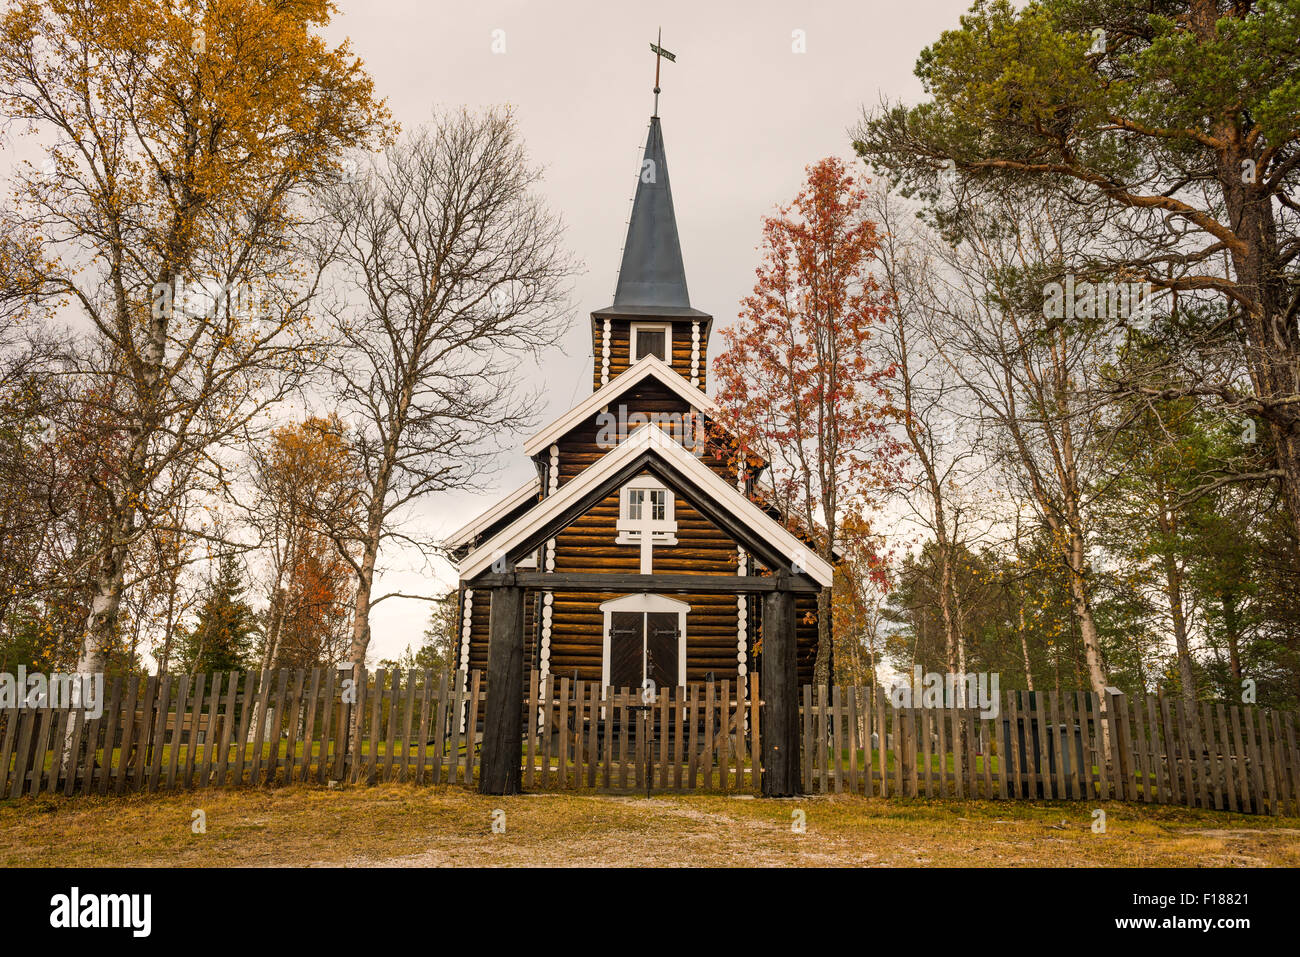 Église de Somadal, Hedmark, Norvège situé dans un cadre d'automne. Banque D'Images